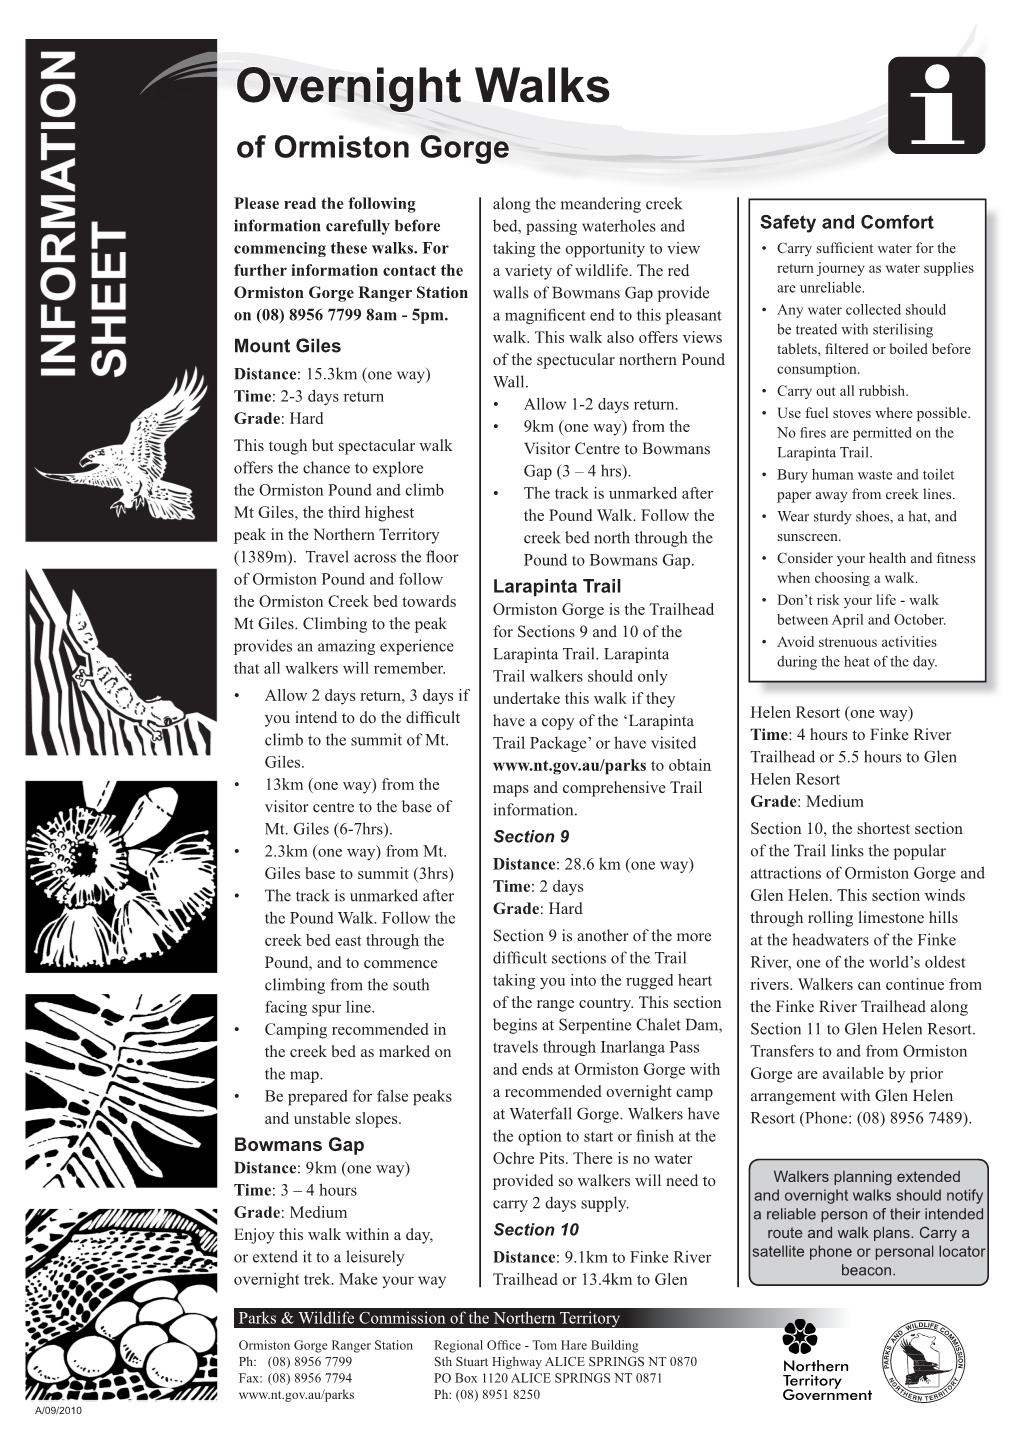 Ormiston Gorge Overnight Walks Fact Sheet